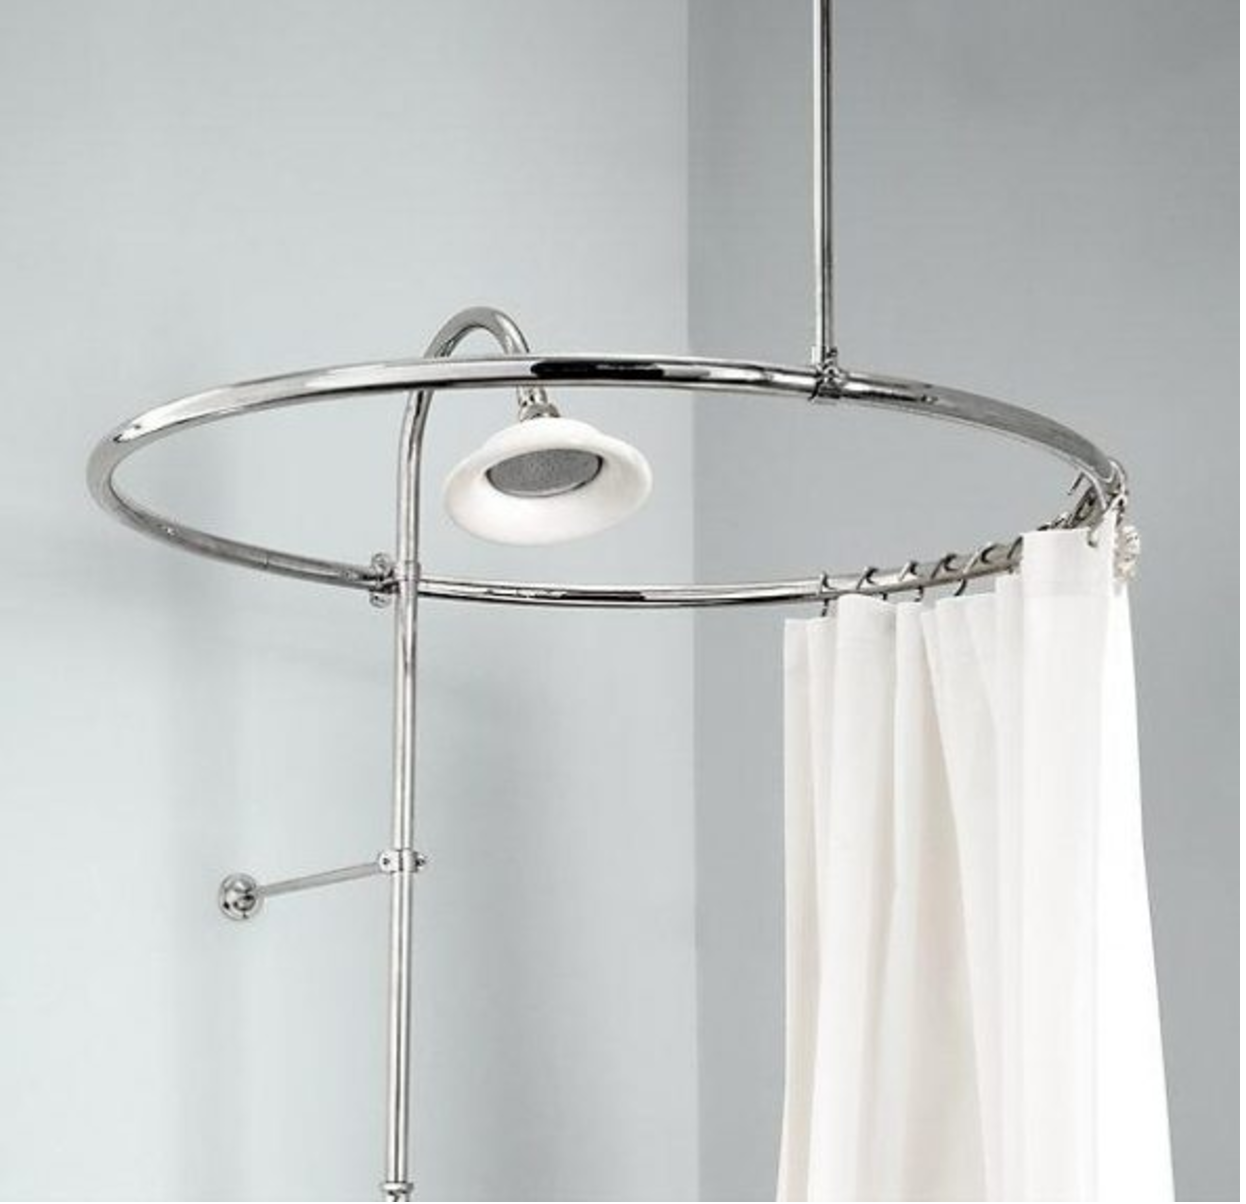 Угловая штанга для ванной шторки. Карниз для ванны verran 690-09. Круглый карниз для шторы в ванную. Штанга для душевой шторки. Круглая штанга для шторы в ванную.